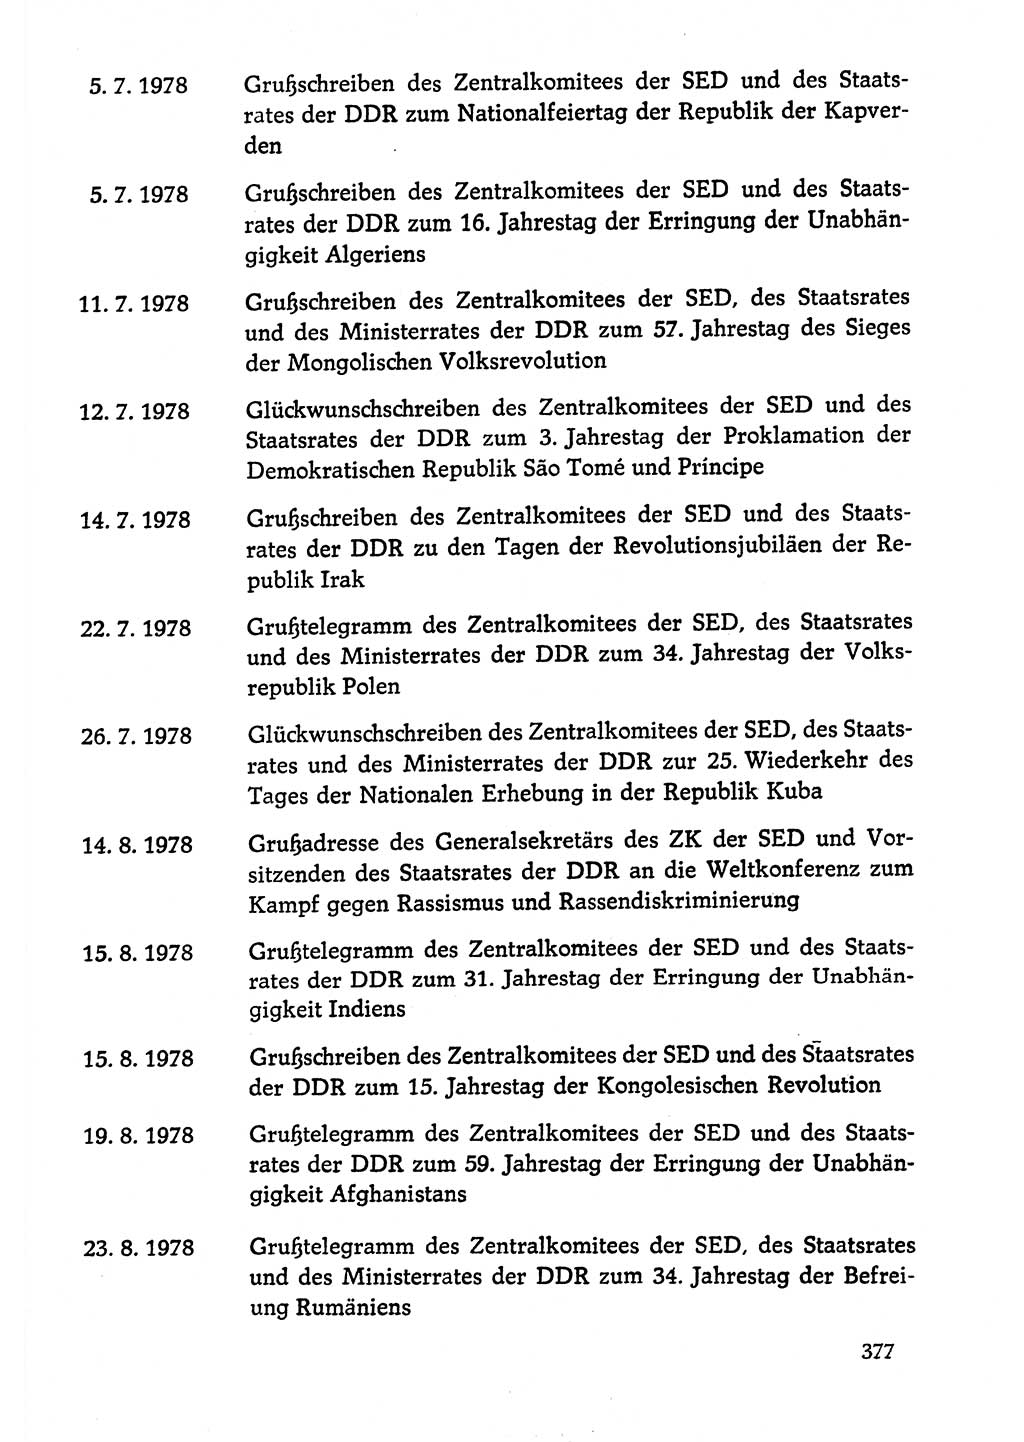 Dokumente der Sozialistischen Einheitspartei Deutschlands (SED) [Deutsche Demokratische Republik (DDR)] 1978-1979, Seite 377 (Dok. SED DDR 1978-1979, S. 377)